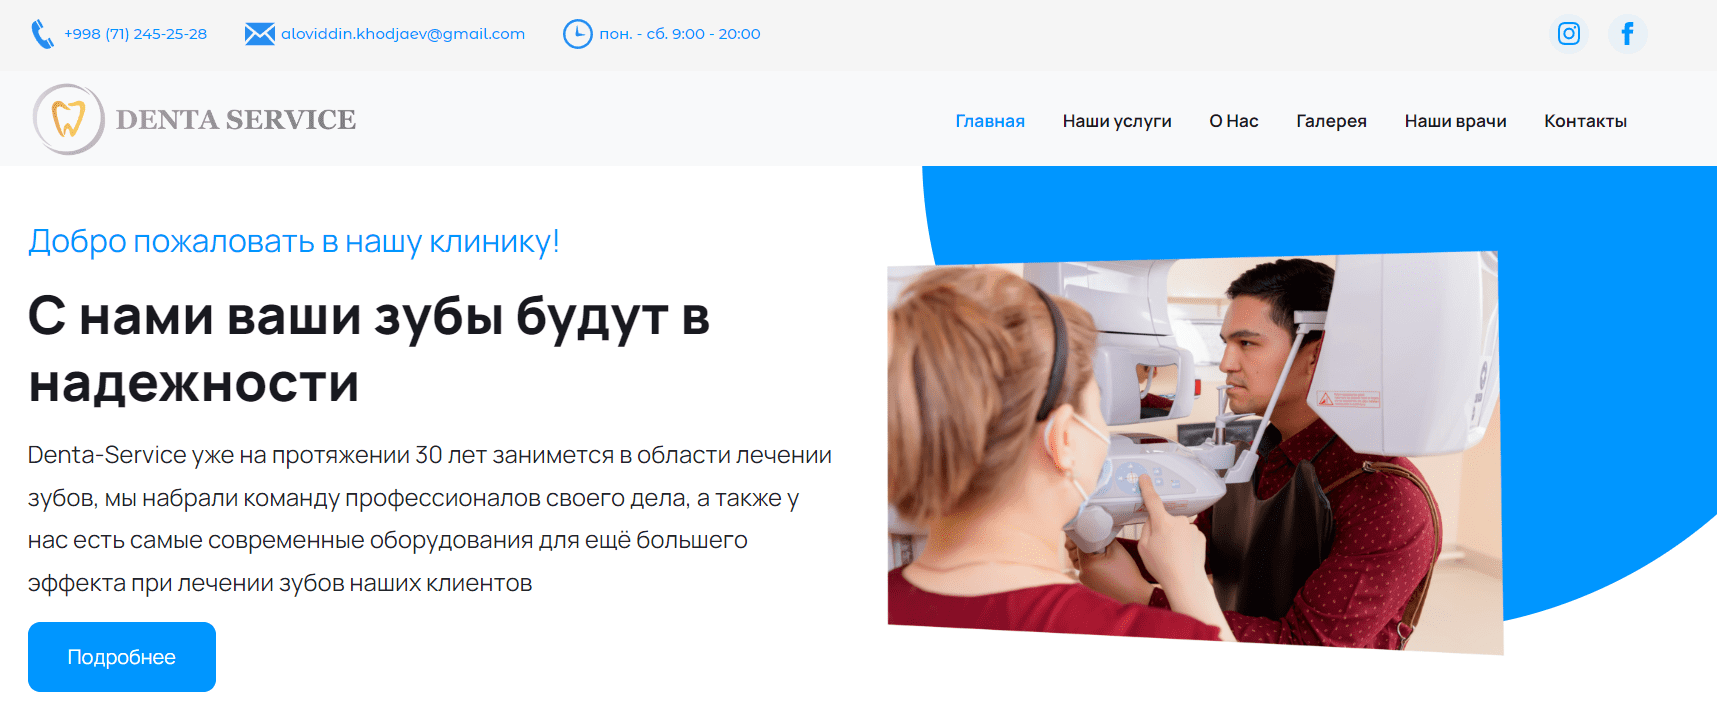 Denta-Service (denta-service.uz) - официальный сайт